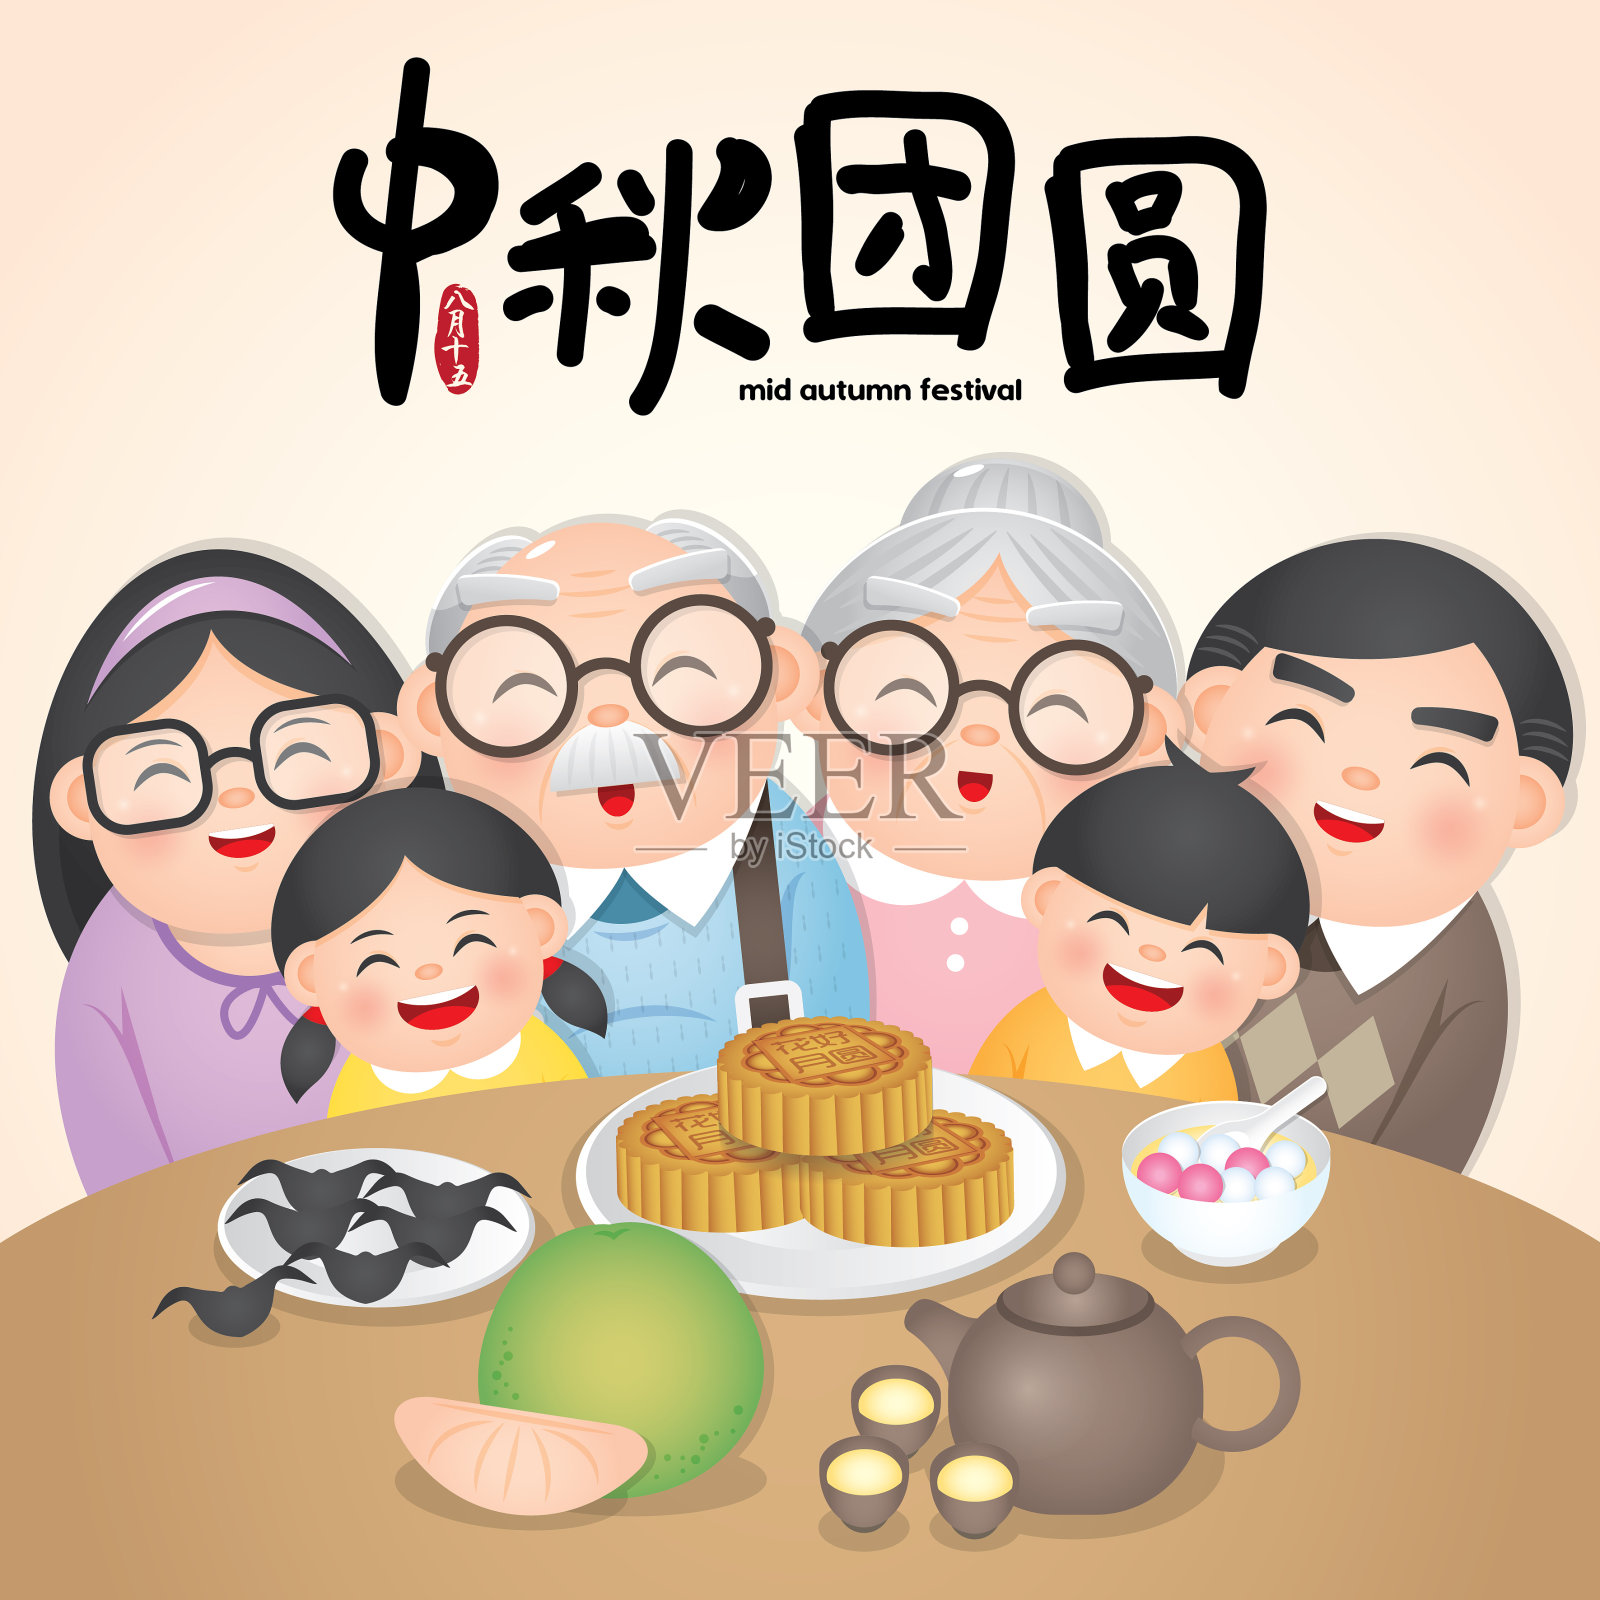 中秋节或中秋节插画与幸福的家庭与传统食物。说明:8月15日;快乐的中秋团圆设计模板素材